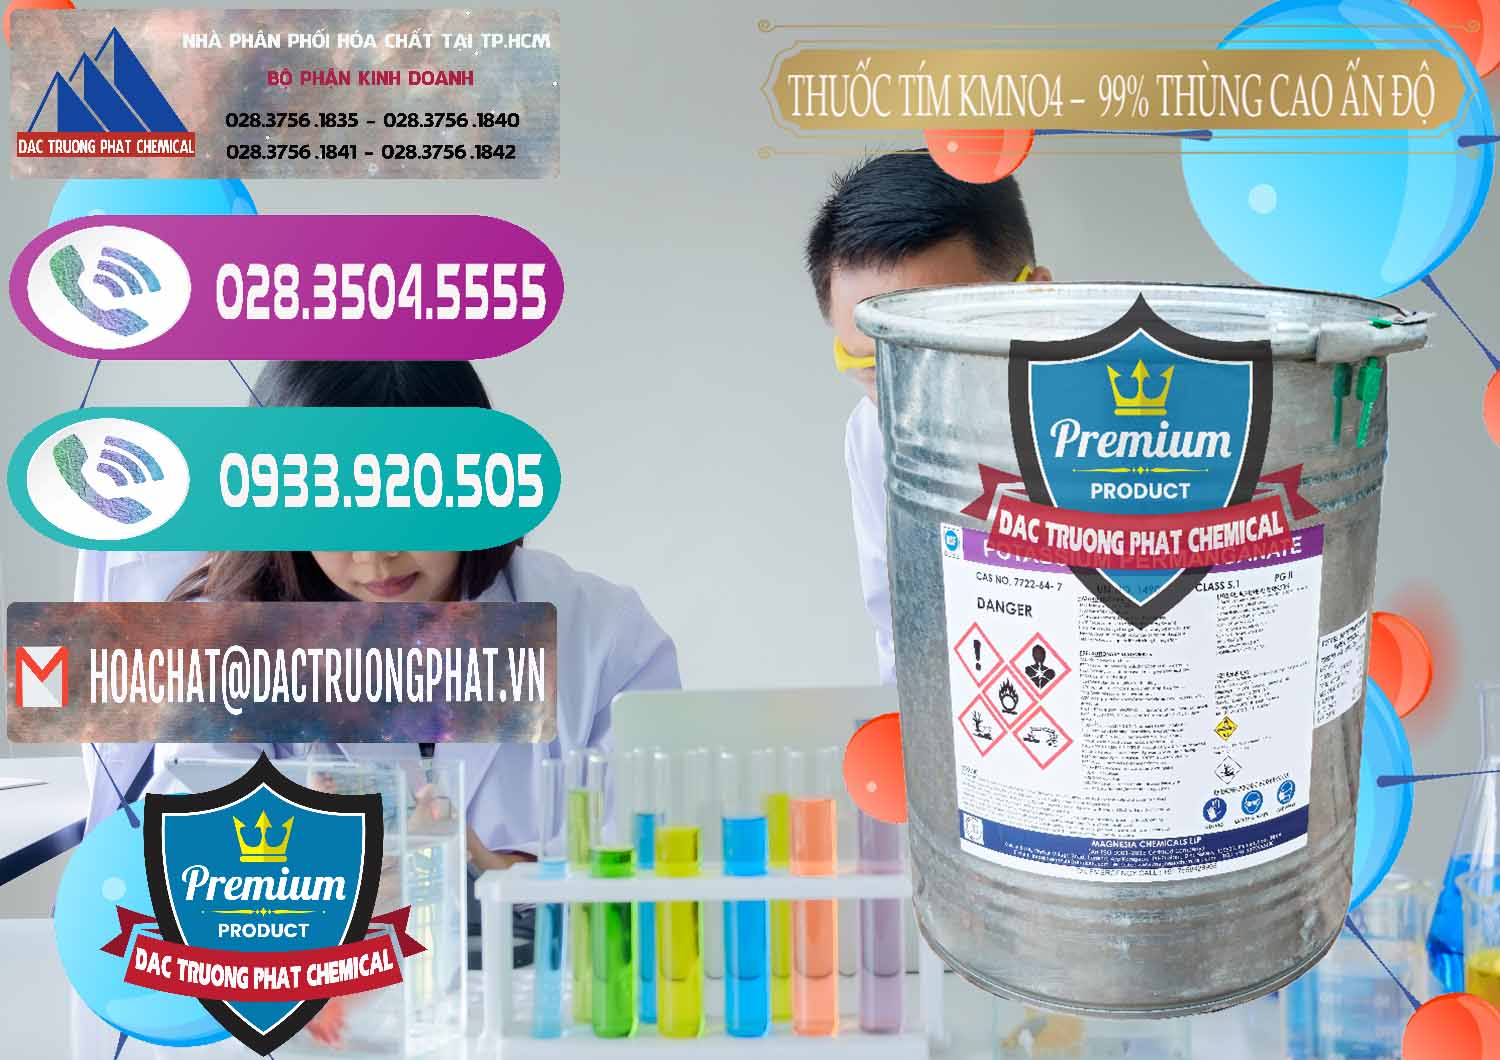 Chuyên bán ( cung cấp ) Thuốc Tím - KMNO4 Thùng Cao 99% Magnesia Chemicals Ấn Độ India - 0164 - Nơi cung cấp & phân phối hóa chất tại TP.HCM - hoachatxulynuoc.com